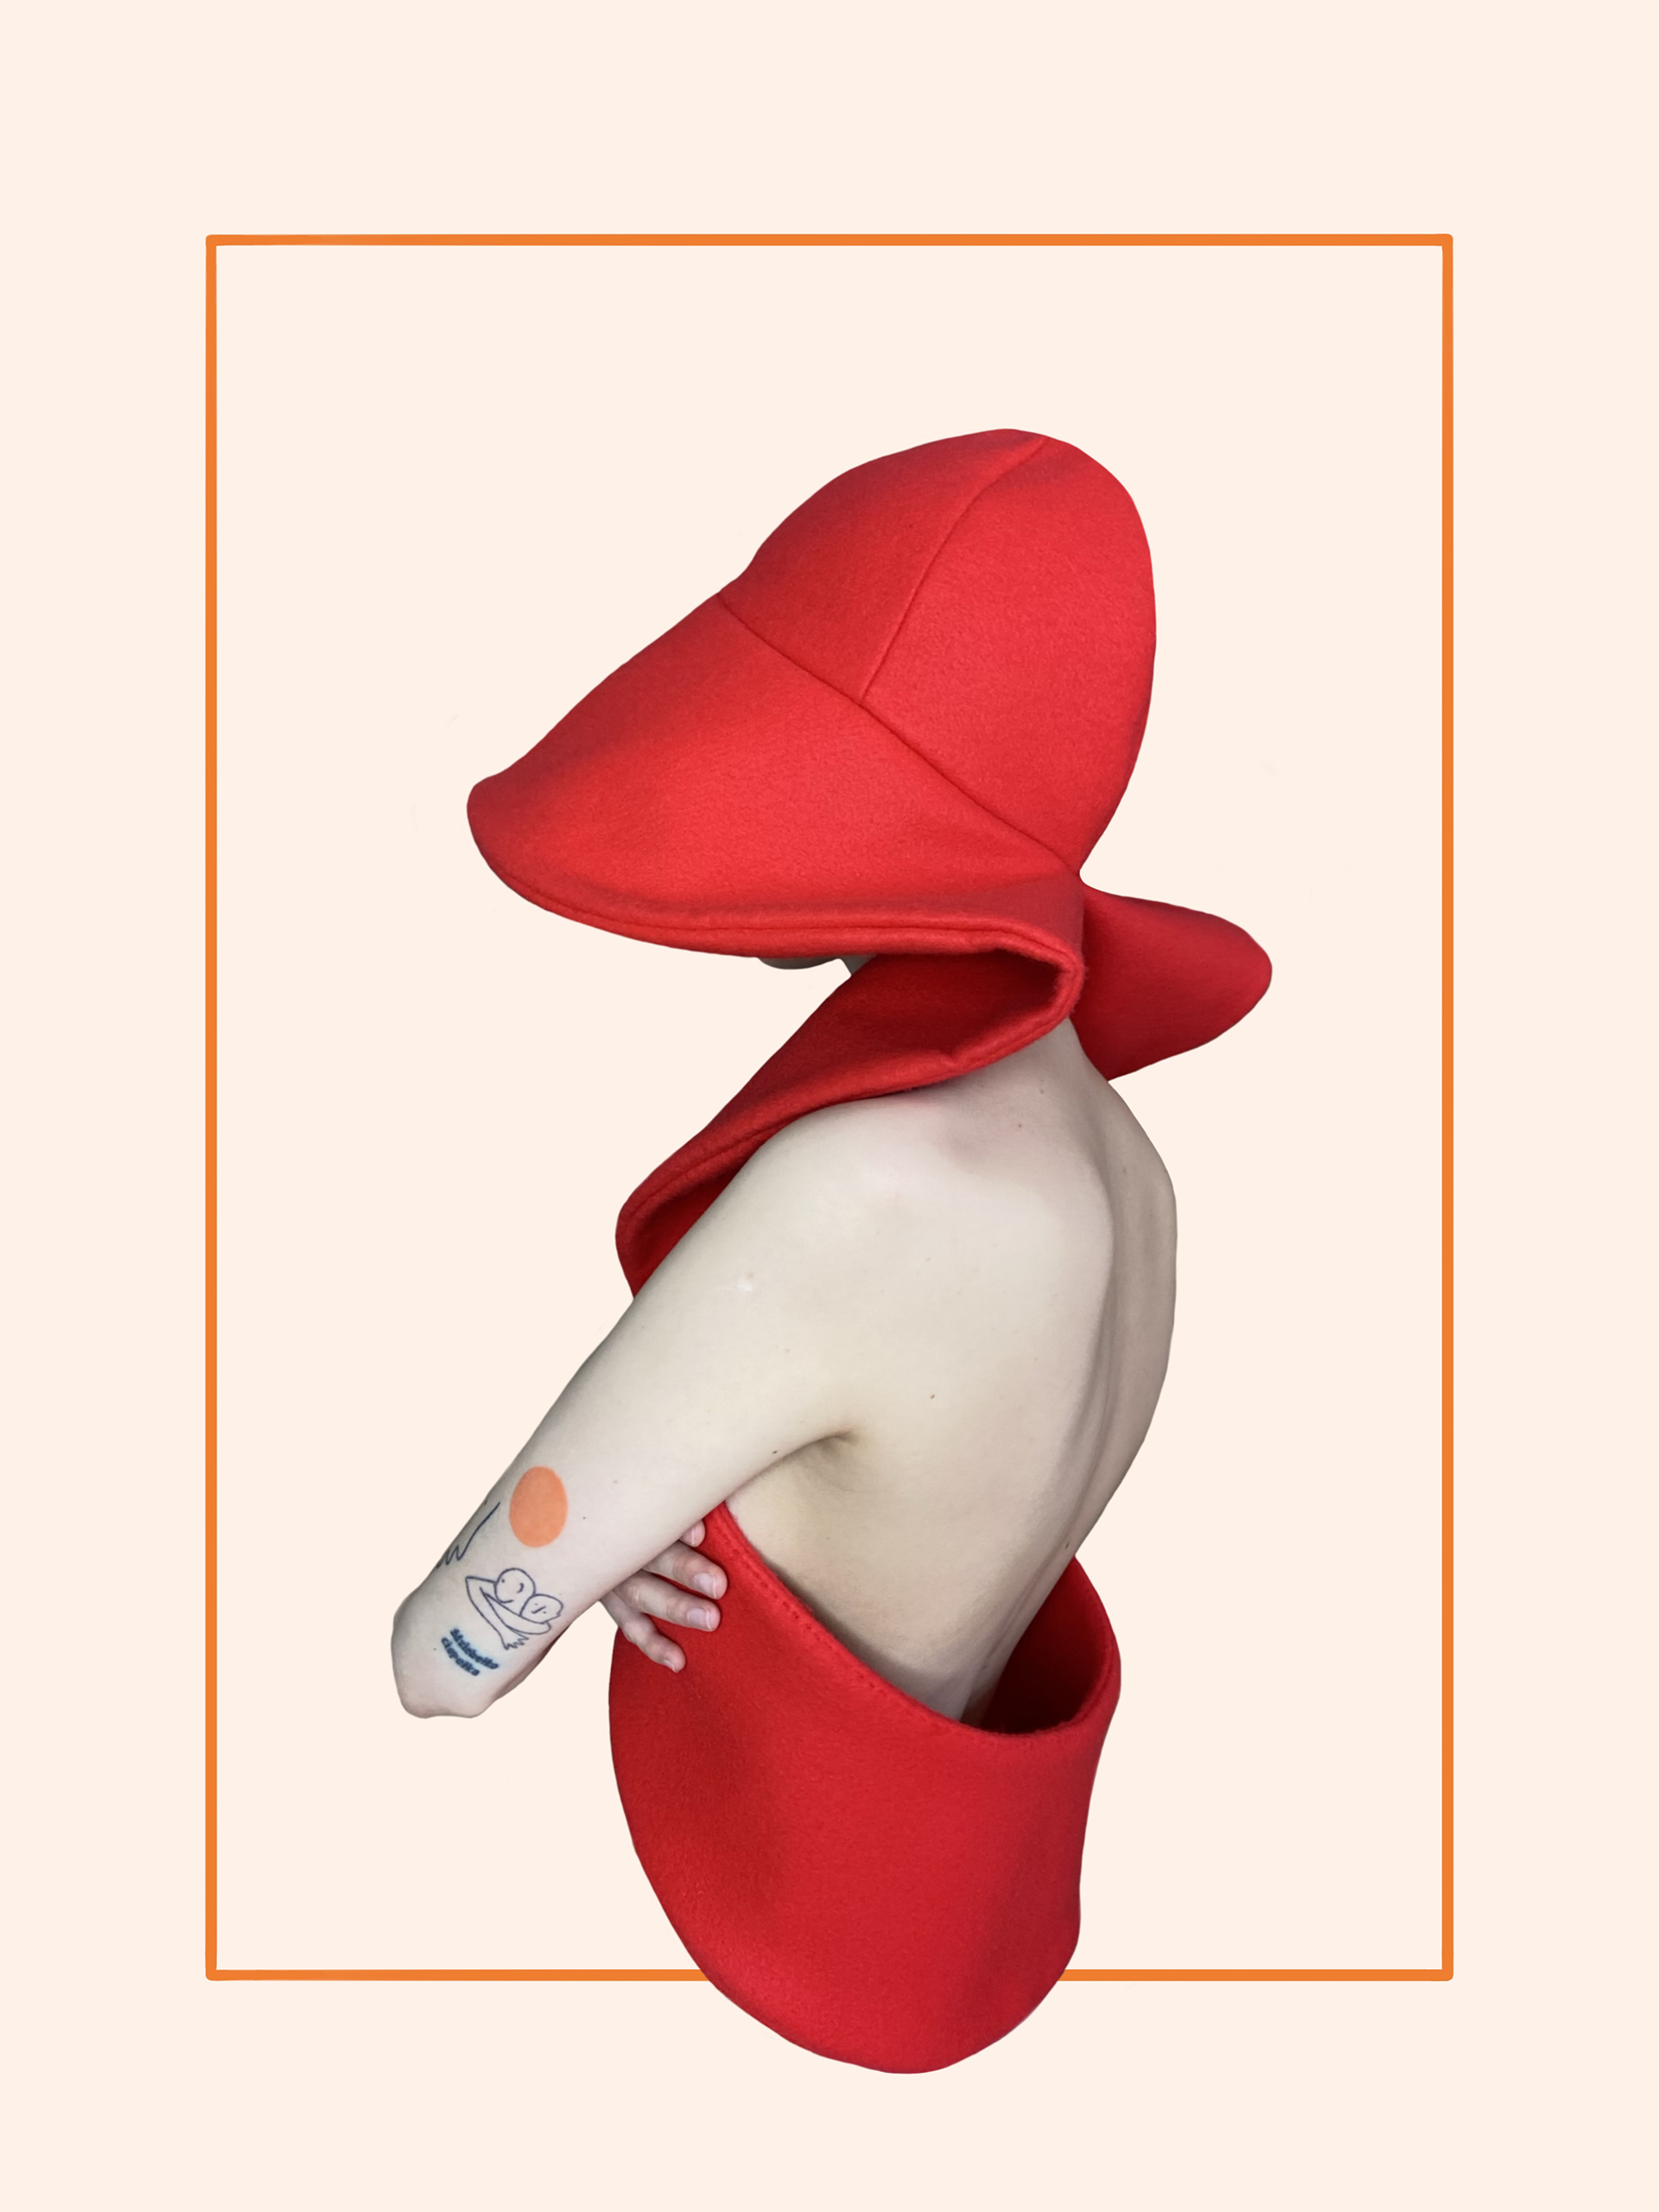 Osoba widoczna od pasa w górę pod skosem od tyłu. Ubrana w czerwoną sztywną formę kapelusza połączonego z kamizelką. Widoczne nagie plecy i ramię. Tło neutralne beżowe.